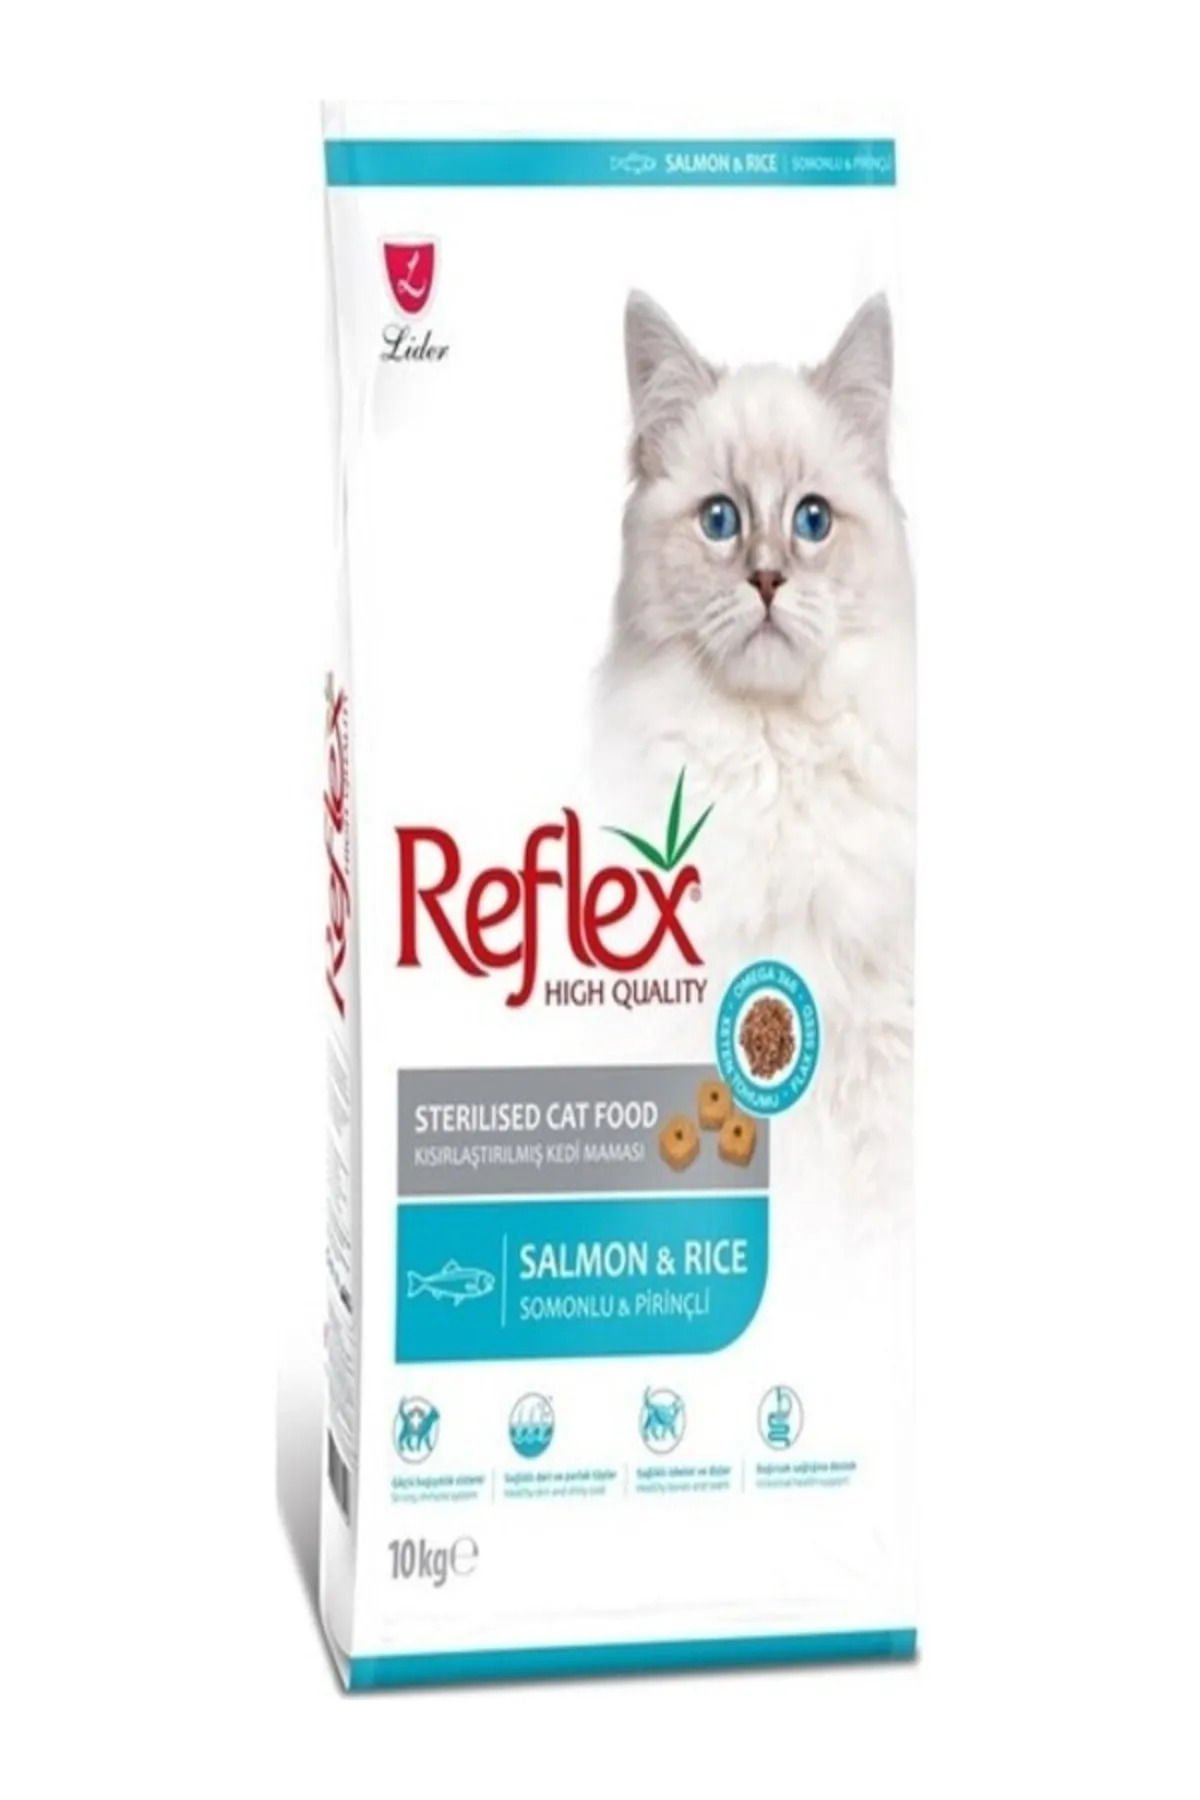 Reflex Sterılsed Salmon & Rıca Aduldt Cat Food 10 Kg RFL-214